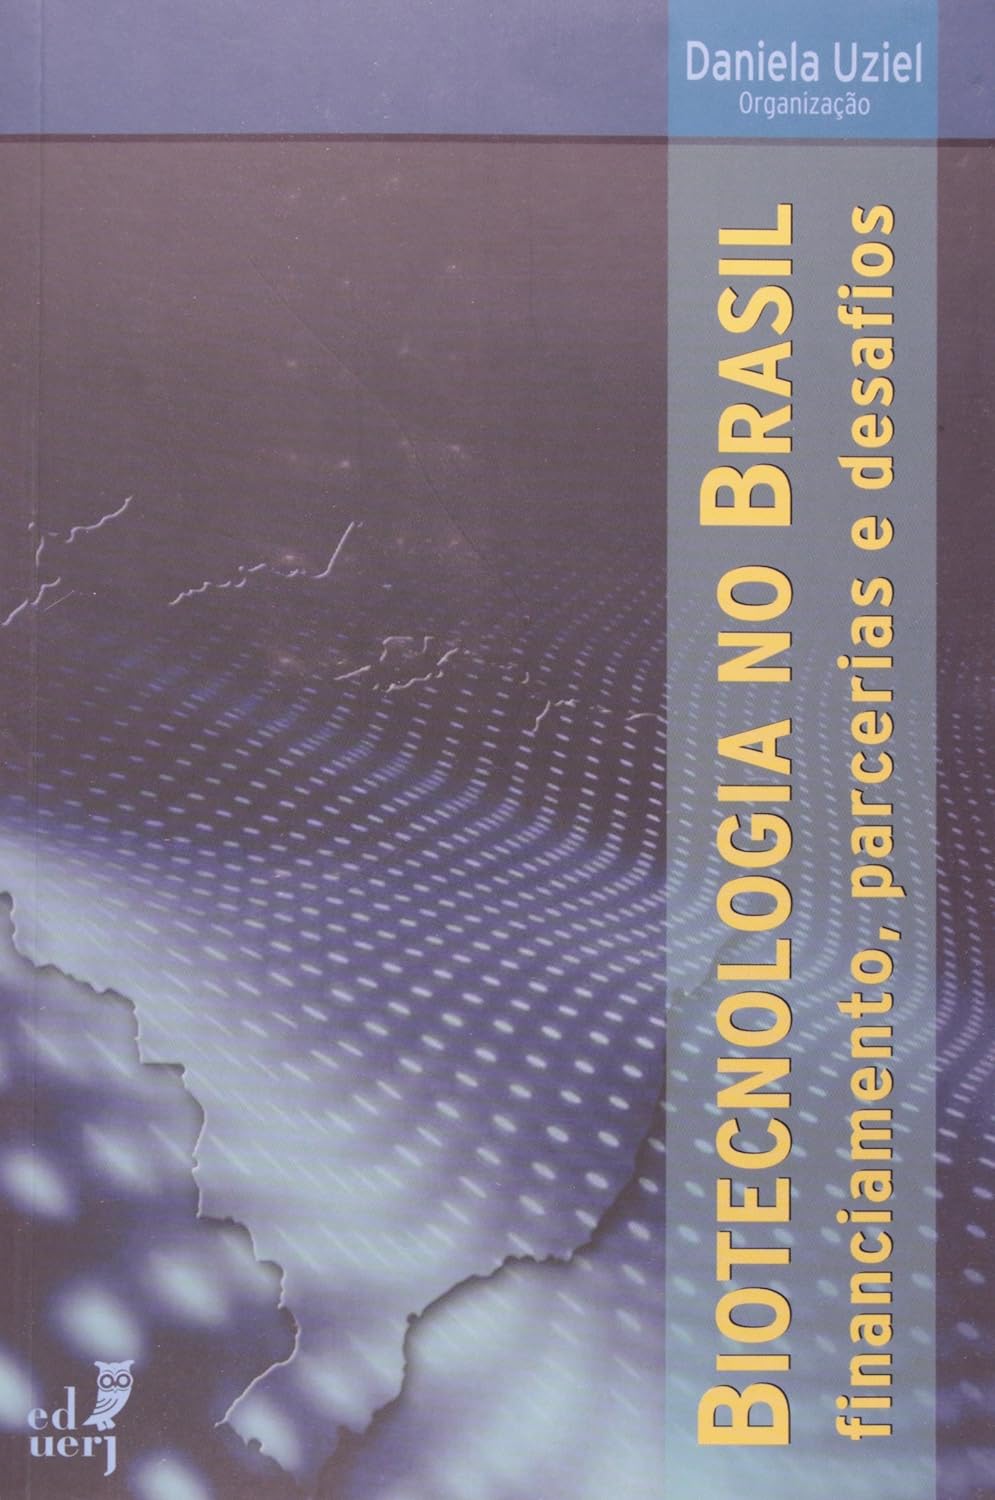 Capa do livro:  Biotecnologia no Brasil, financiamento, parcerias e desafios